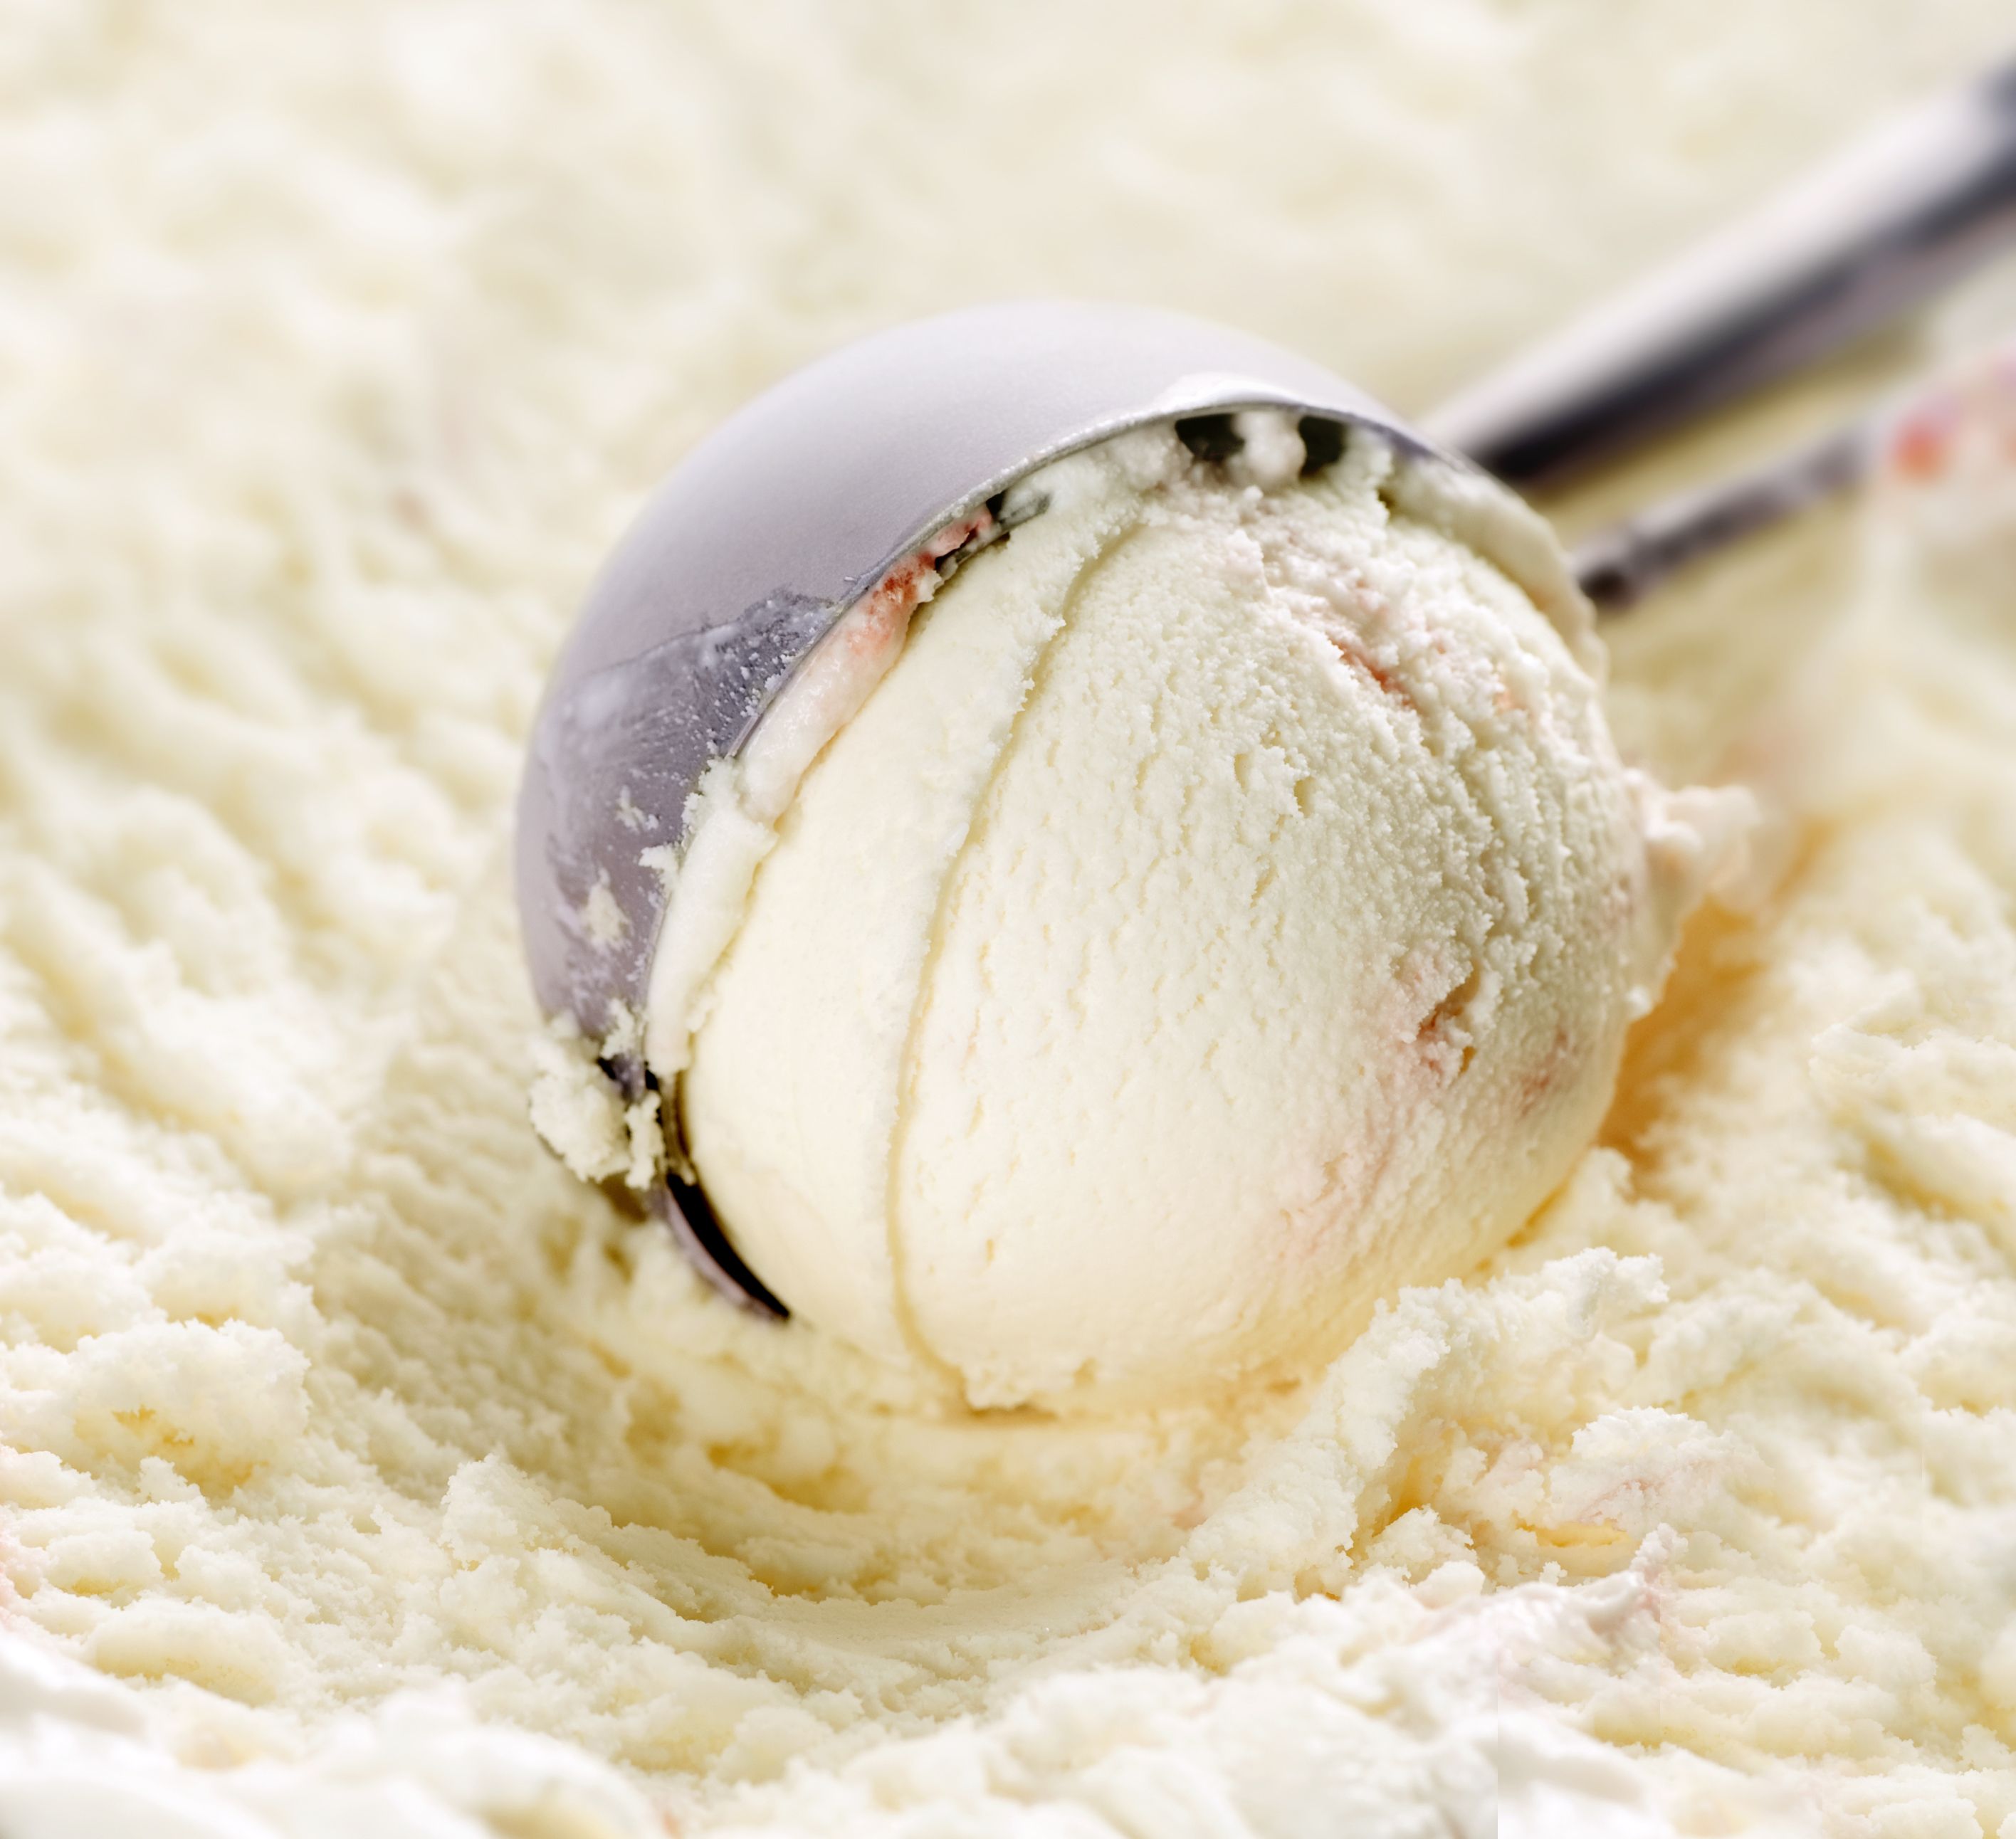 La marca Carrefour se suma a la lista de los helados contaminados por óxido de etileno. foto: Bigstock